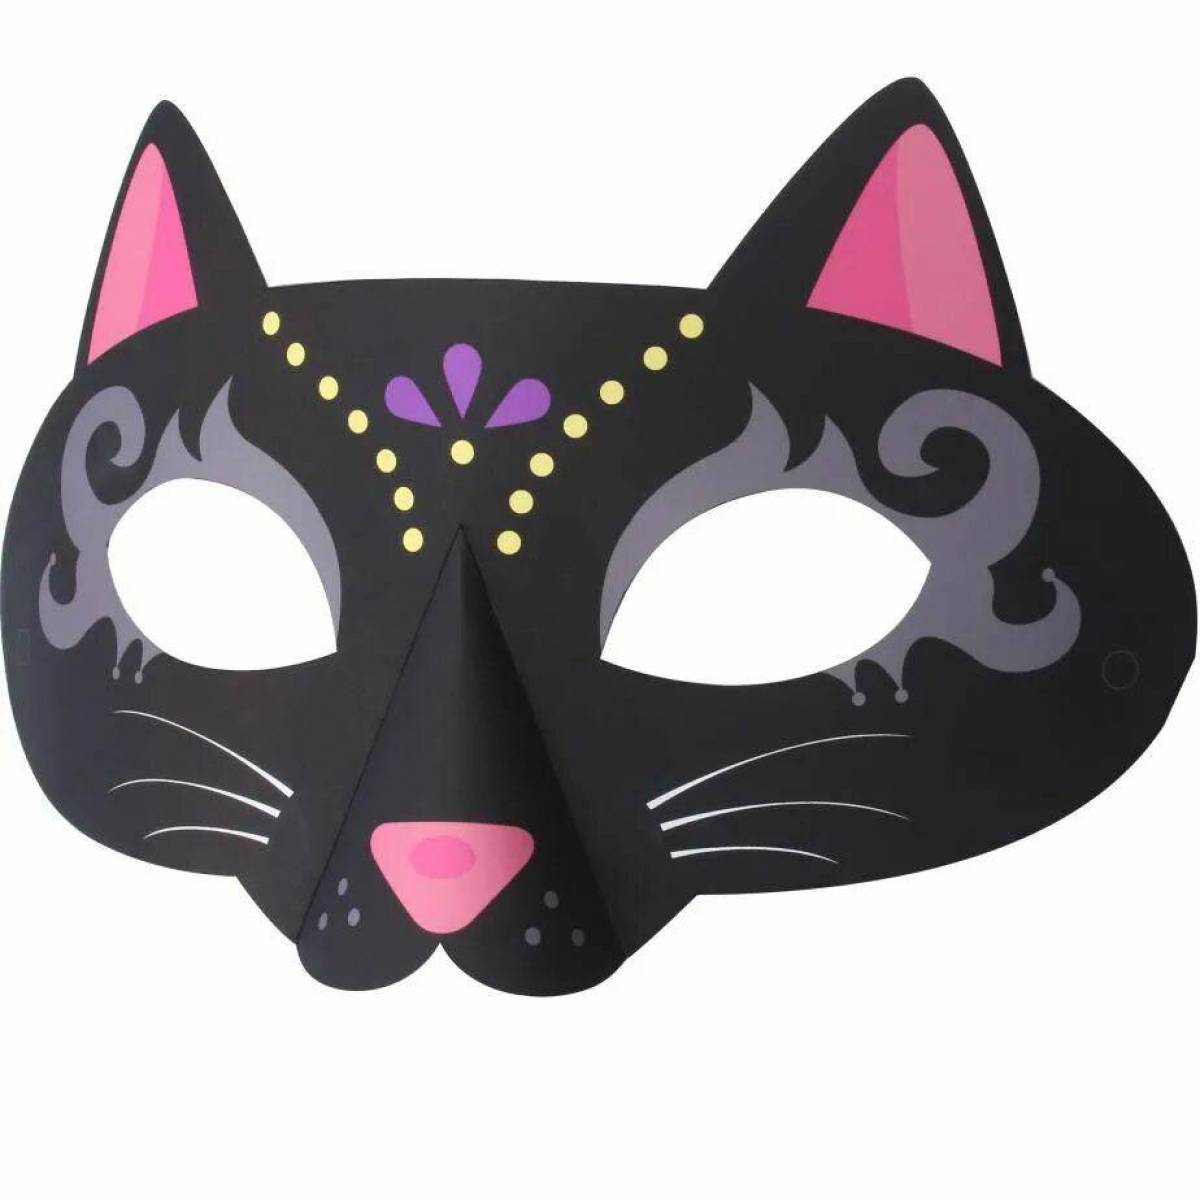 Маска кошки на голову. Маска кошки. Маска кошки для детей. Карнавальная маска кота. Бумажная маска кошки.